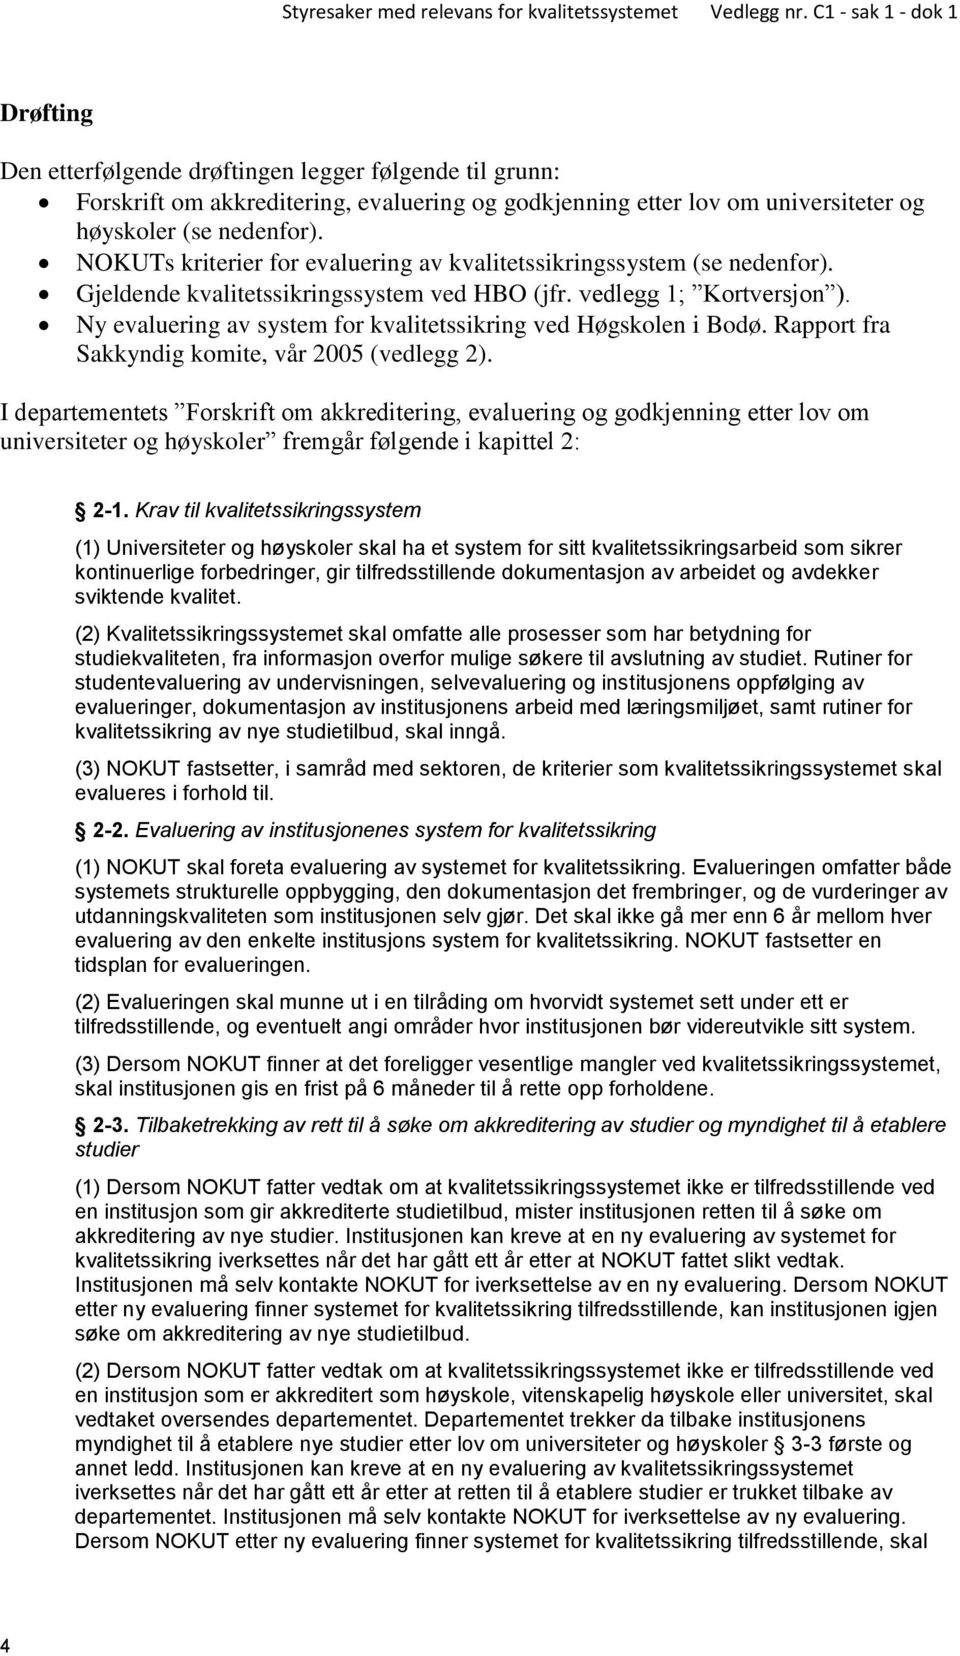 Ny evaluering av system for kvalitetssikring ved Høgskolen i Bodø. Rapport fra Sakkyndig komite, vår 2005 (vedlegg 2).